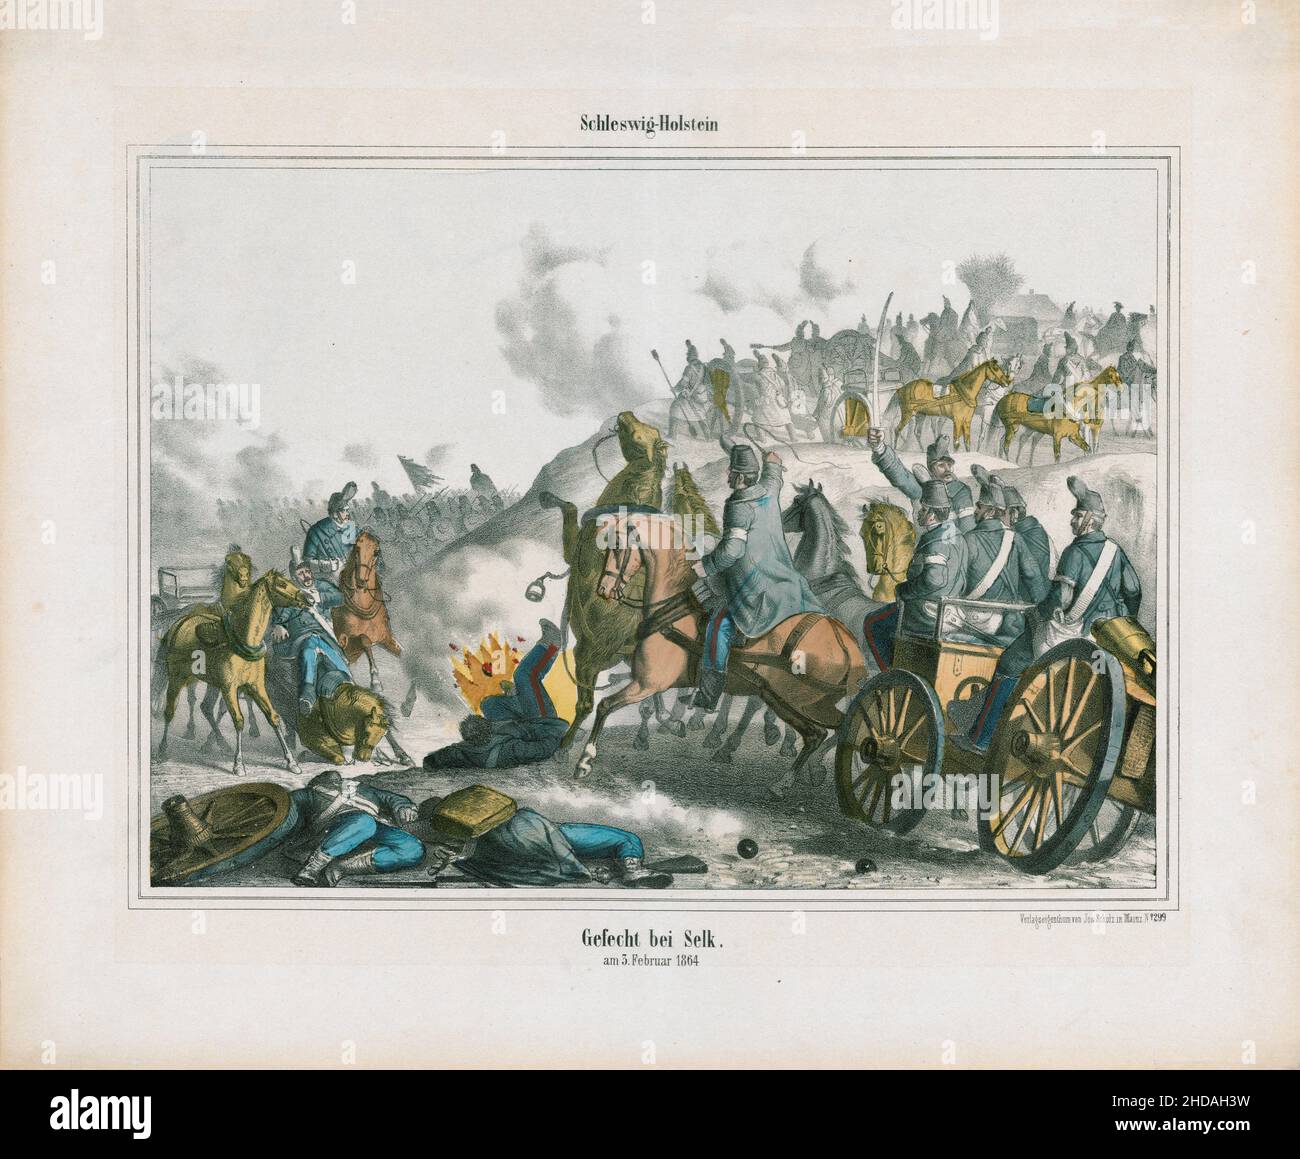 Litografia vintage a colori del secondo periodo della Guerra dello Schleswig: Schleswig-Holstein, battaglia di Selk, 3 febbraio 1864. 1867 la seconda guerra dello Schleswig (Dani Foto Stock